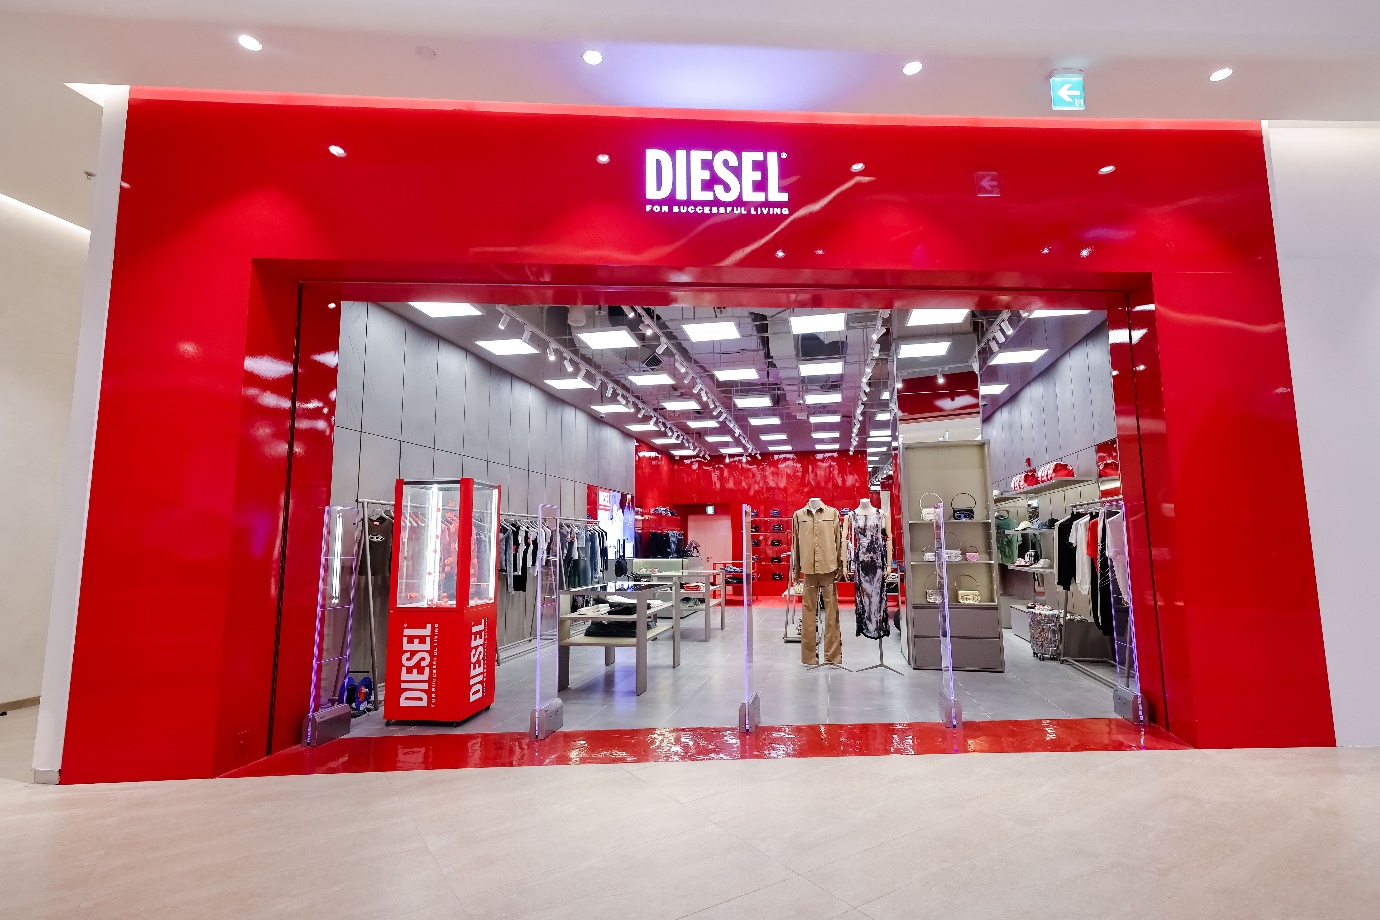 DIESEL ra mắt cửa hàng thứ 2 tại Việt Nam: Không gian mua sắm đẳng cấp, táo bạo tại Lotte Mall, Quận Tây Hồ, Hà Nội - Ảnh 1.